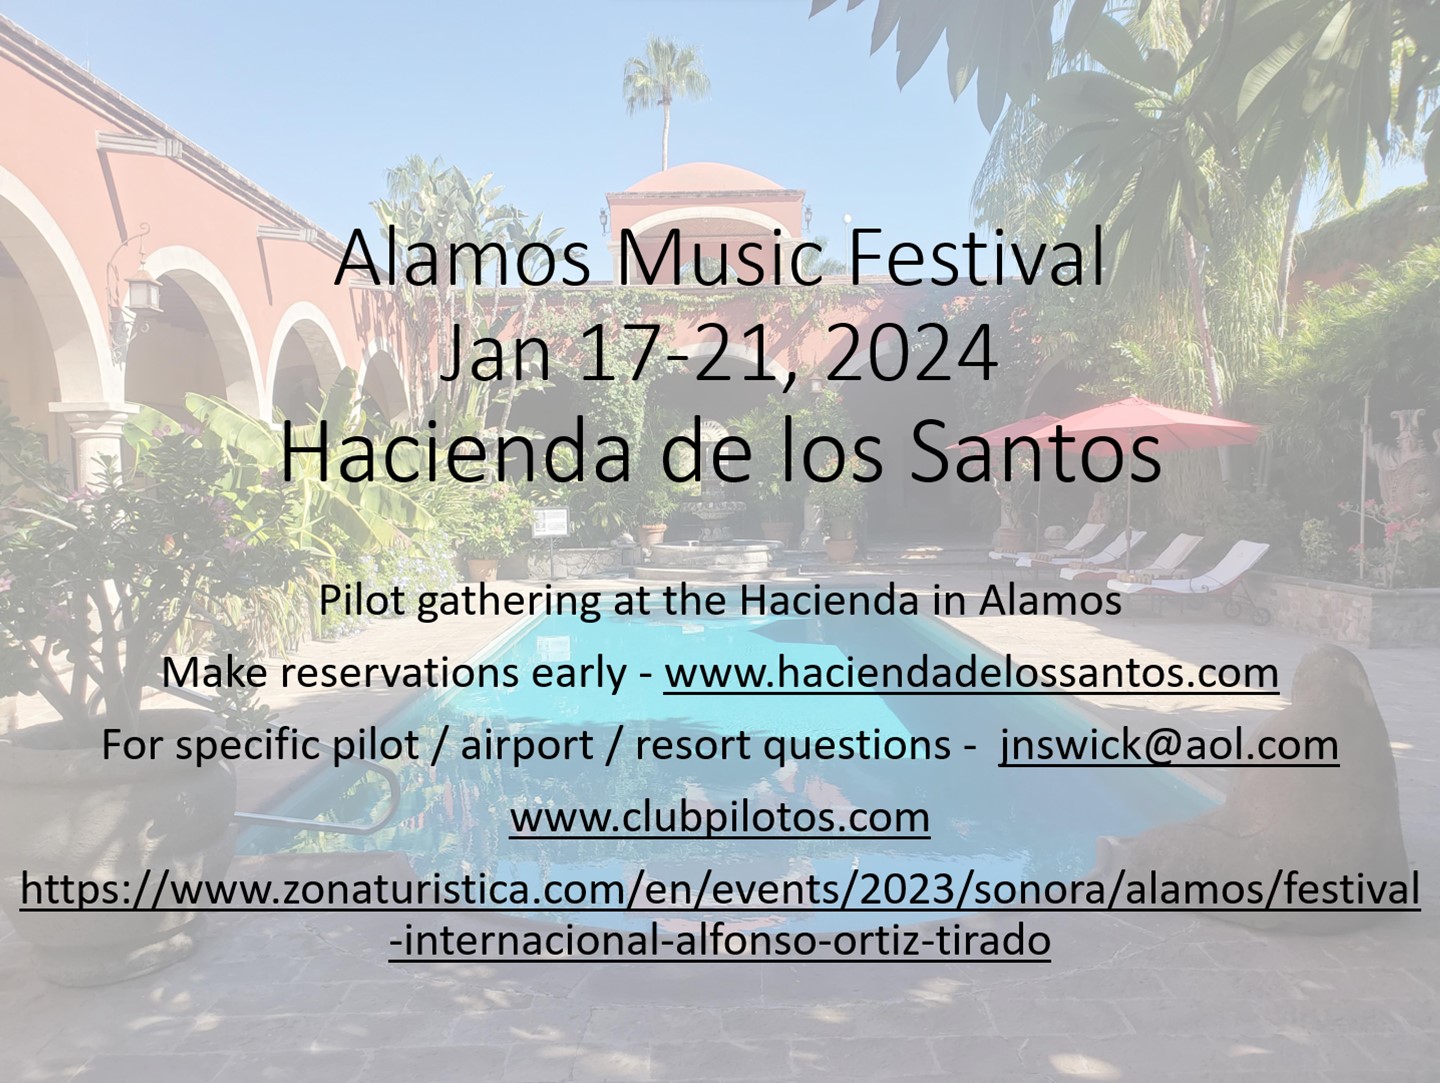 2024 1 17 21 alamos music festival hacienda de los santos